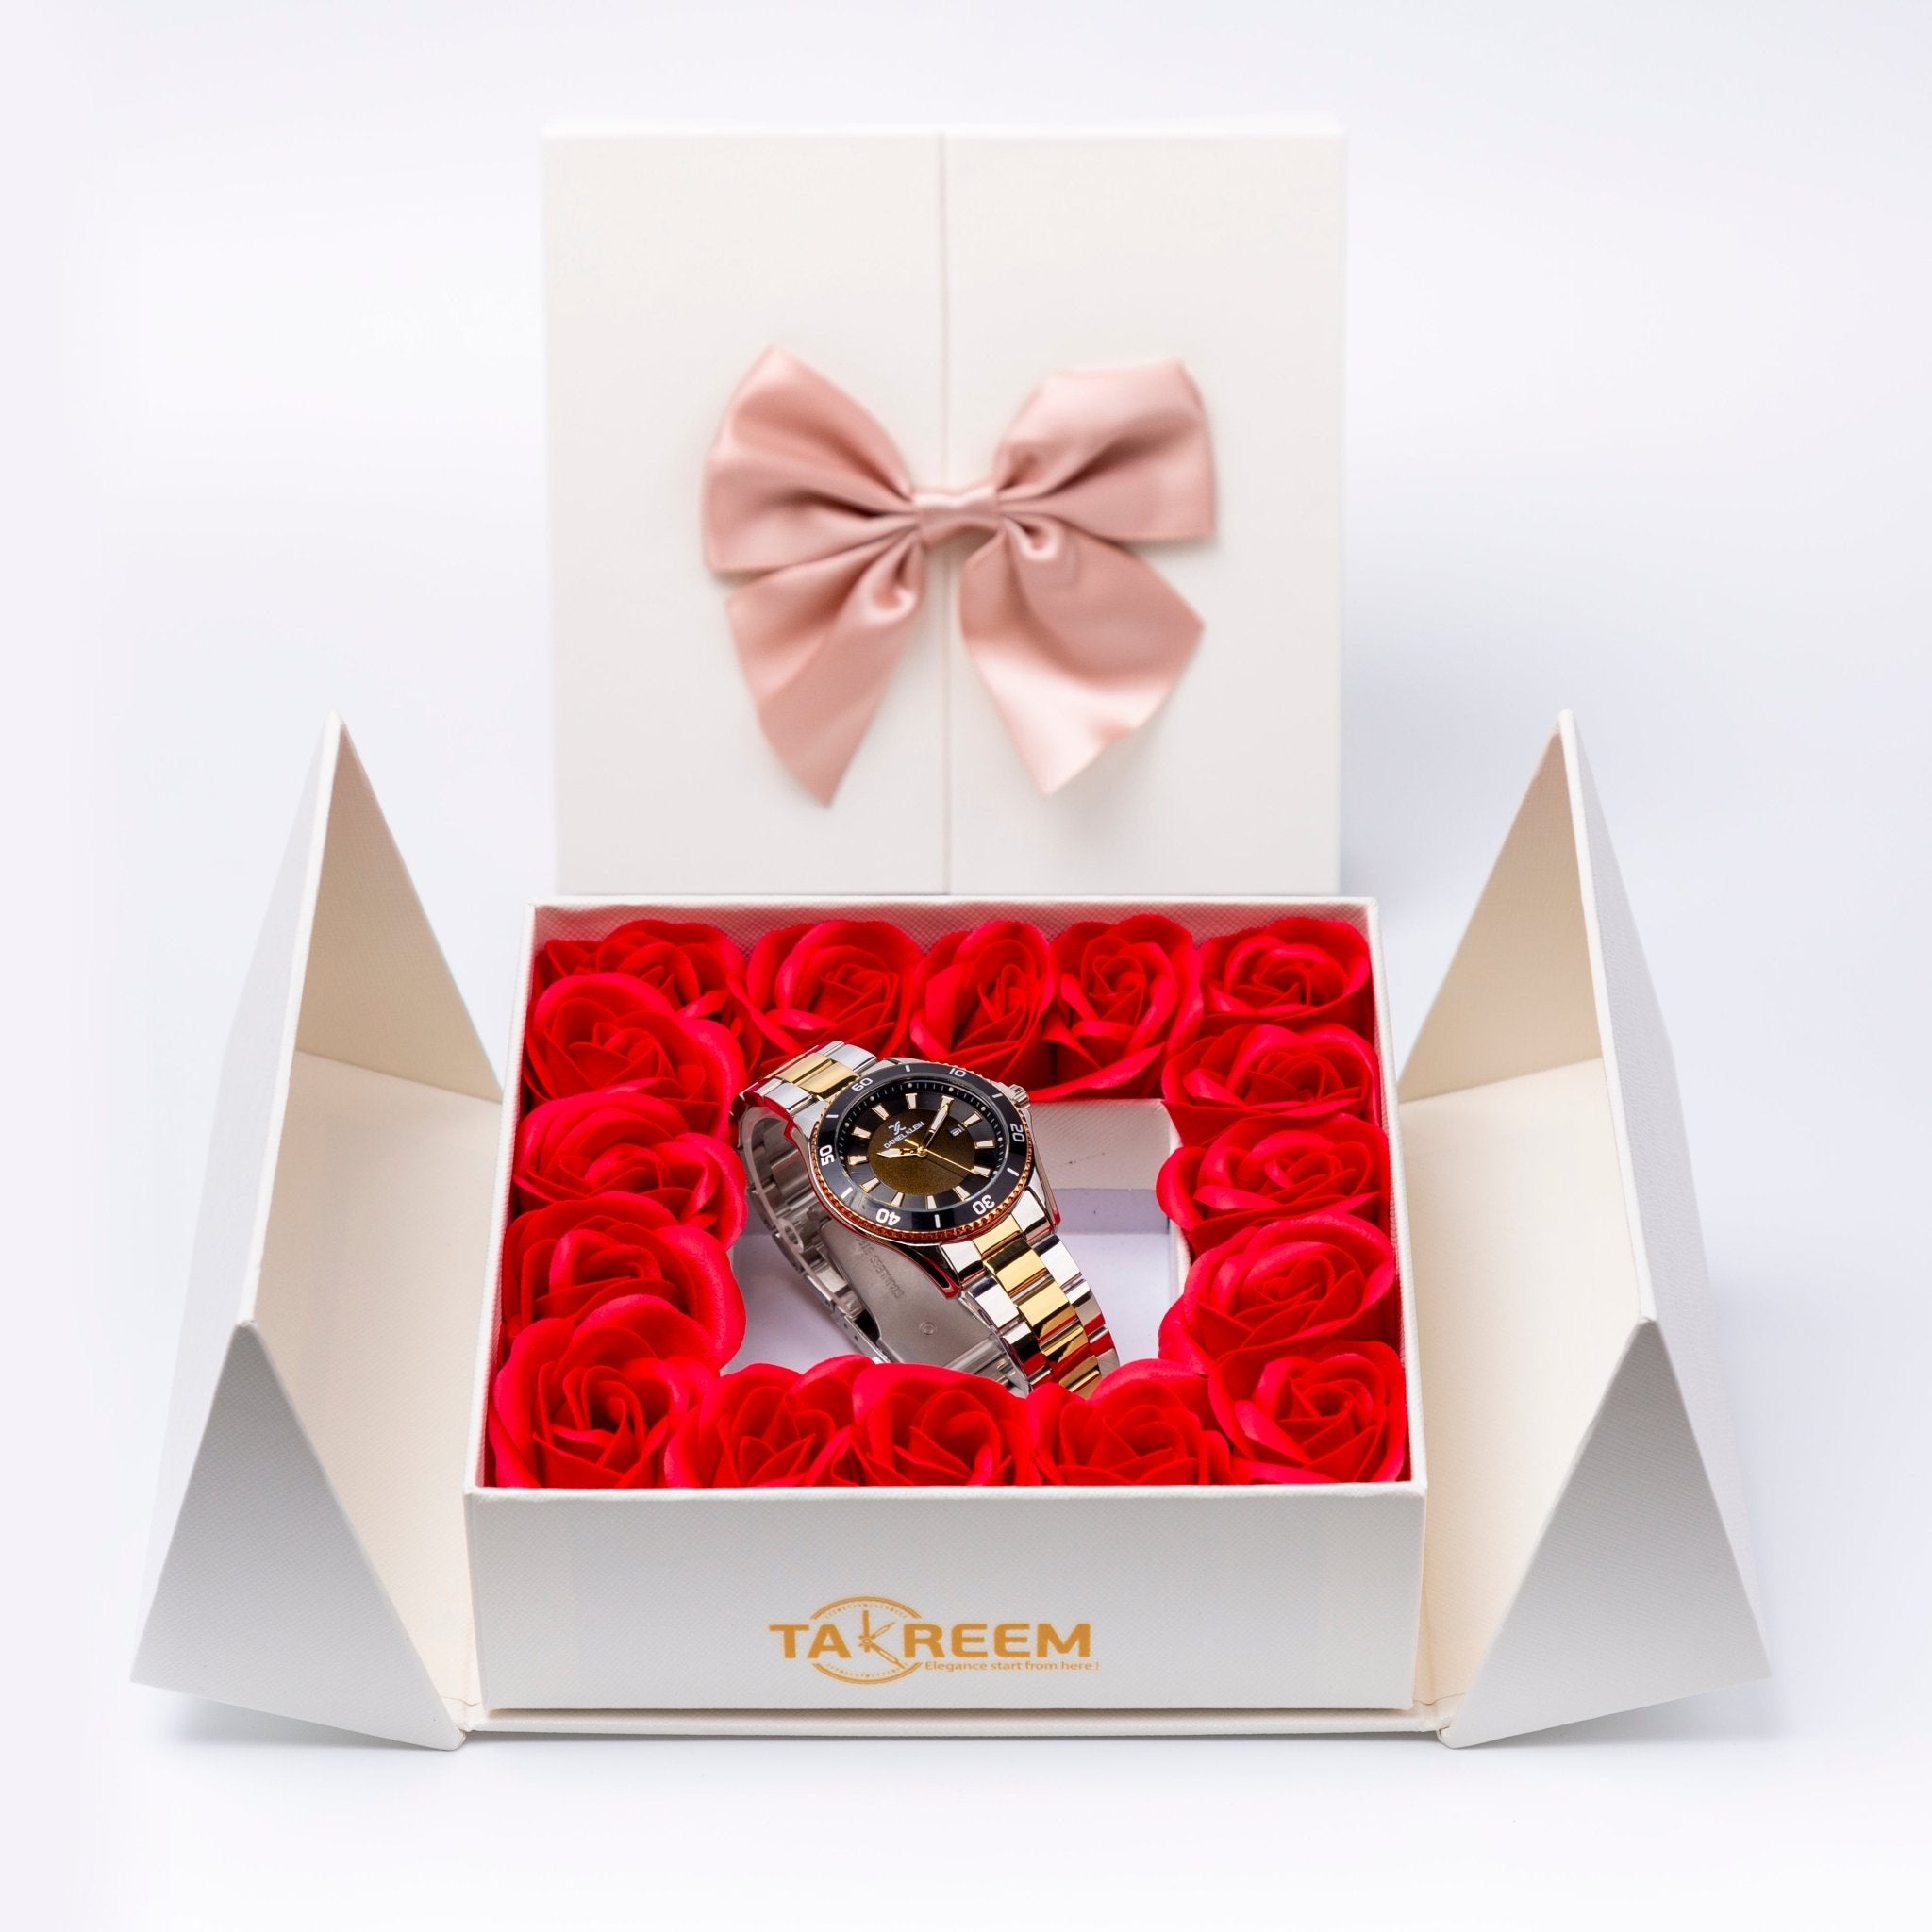 Flower Box - Gift For Women 16 - #shoFlower Box - Gift For Women 16p_name#Flower Box - Gift For Women 16Gift Boxes & TinsTakreemTakreem.joWomenWatchFlower Box - Gift For Women 16 - Takreem.jo